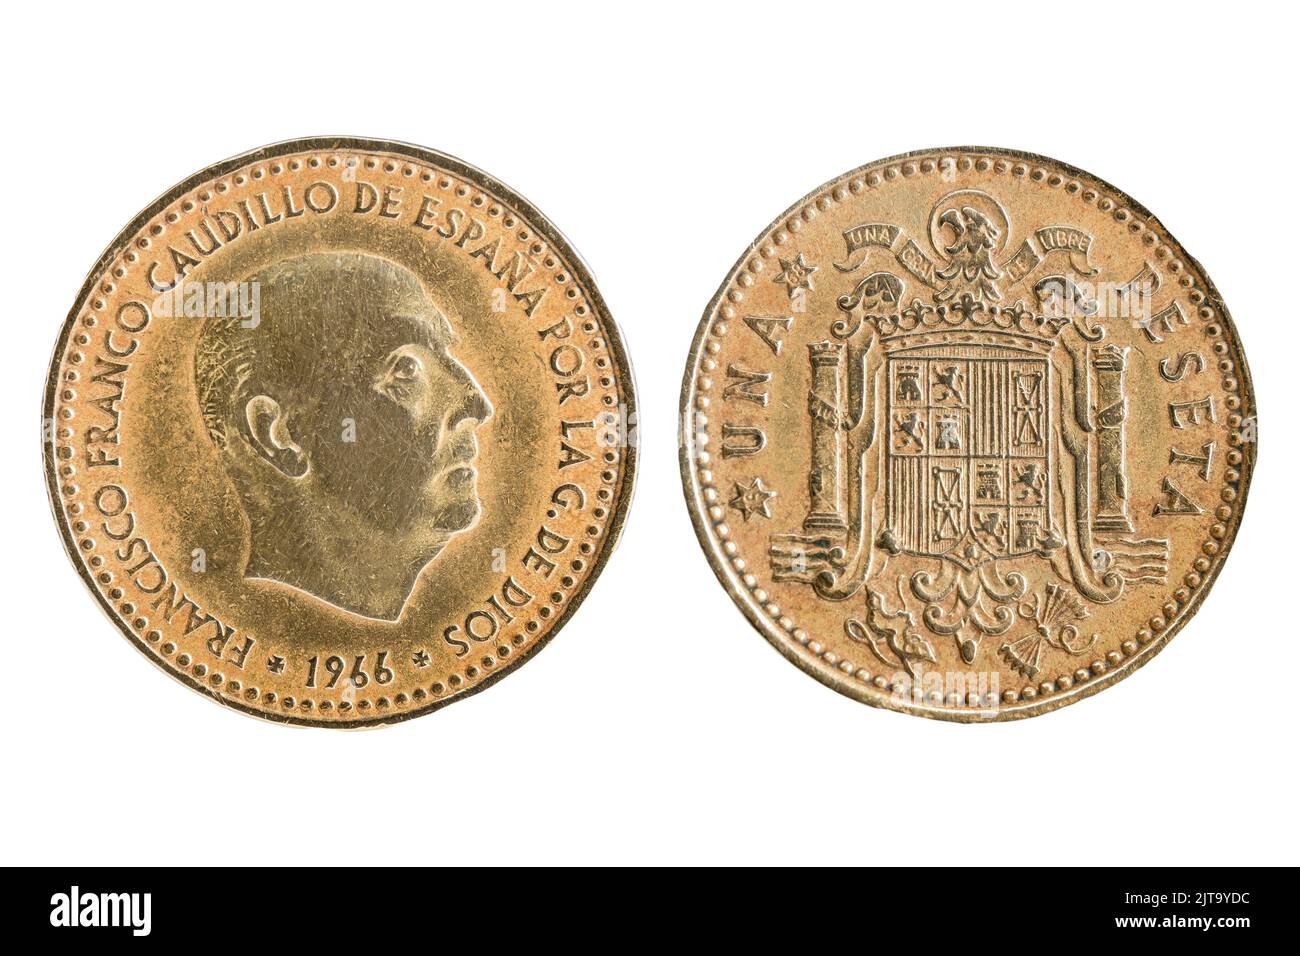 Una ( 1 ) moneda peseta de España con la esfinge de Francisco Franco y el escudo falangista Foto de stock